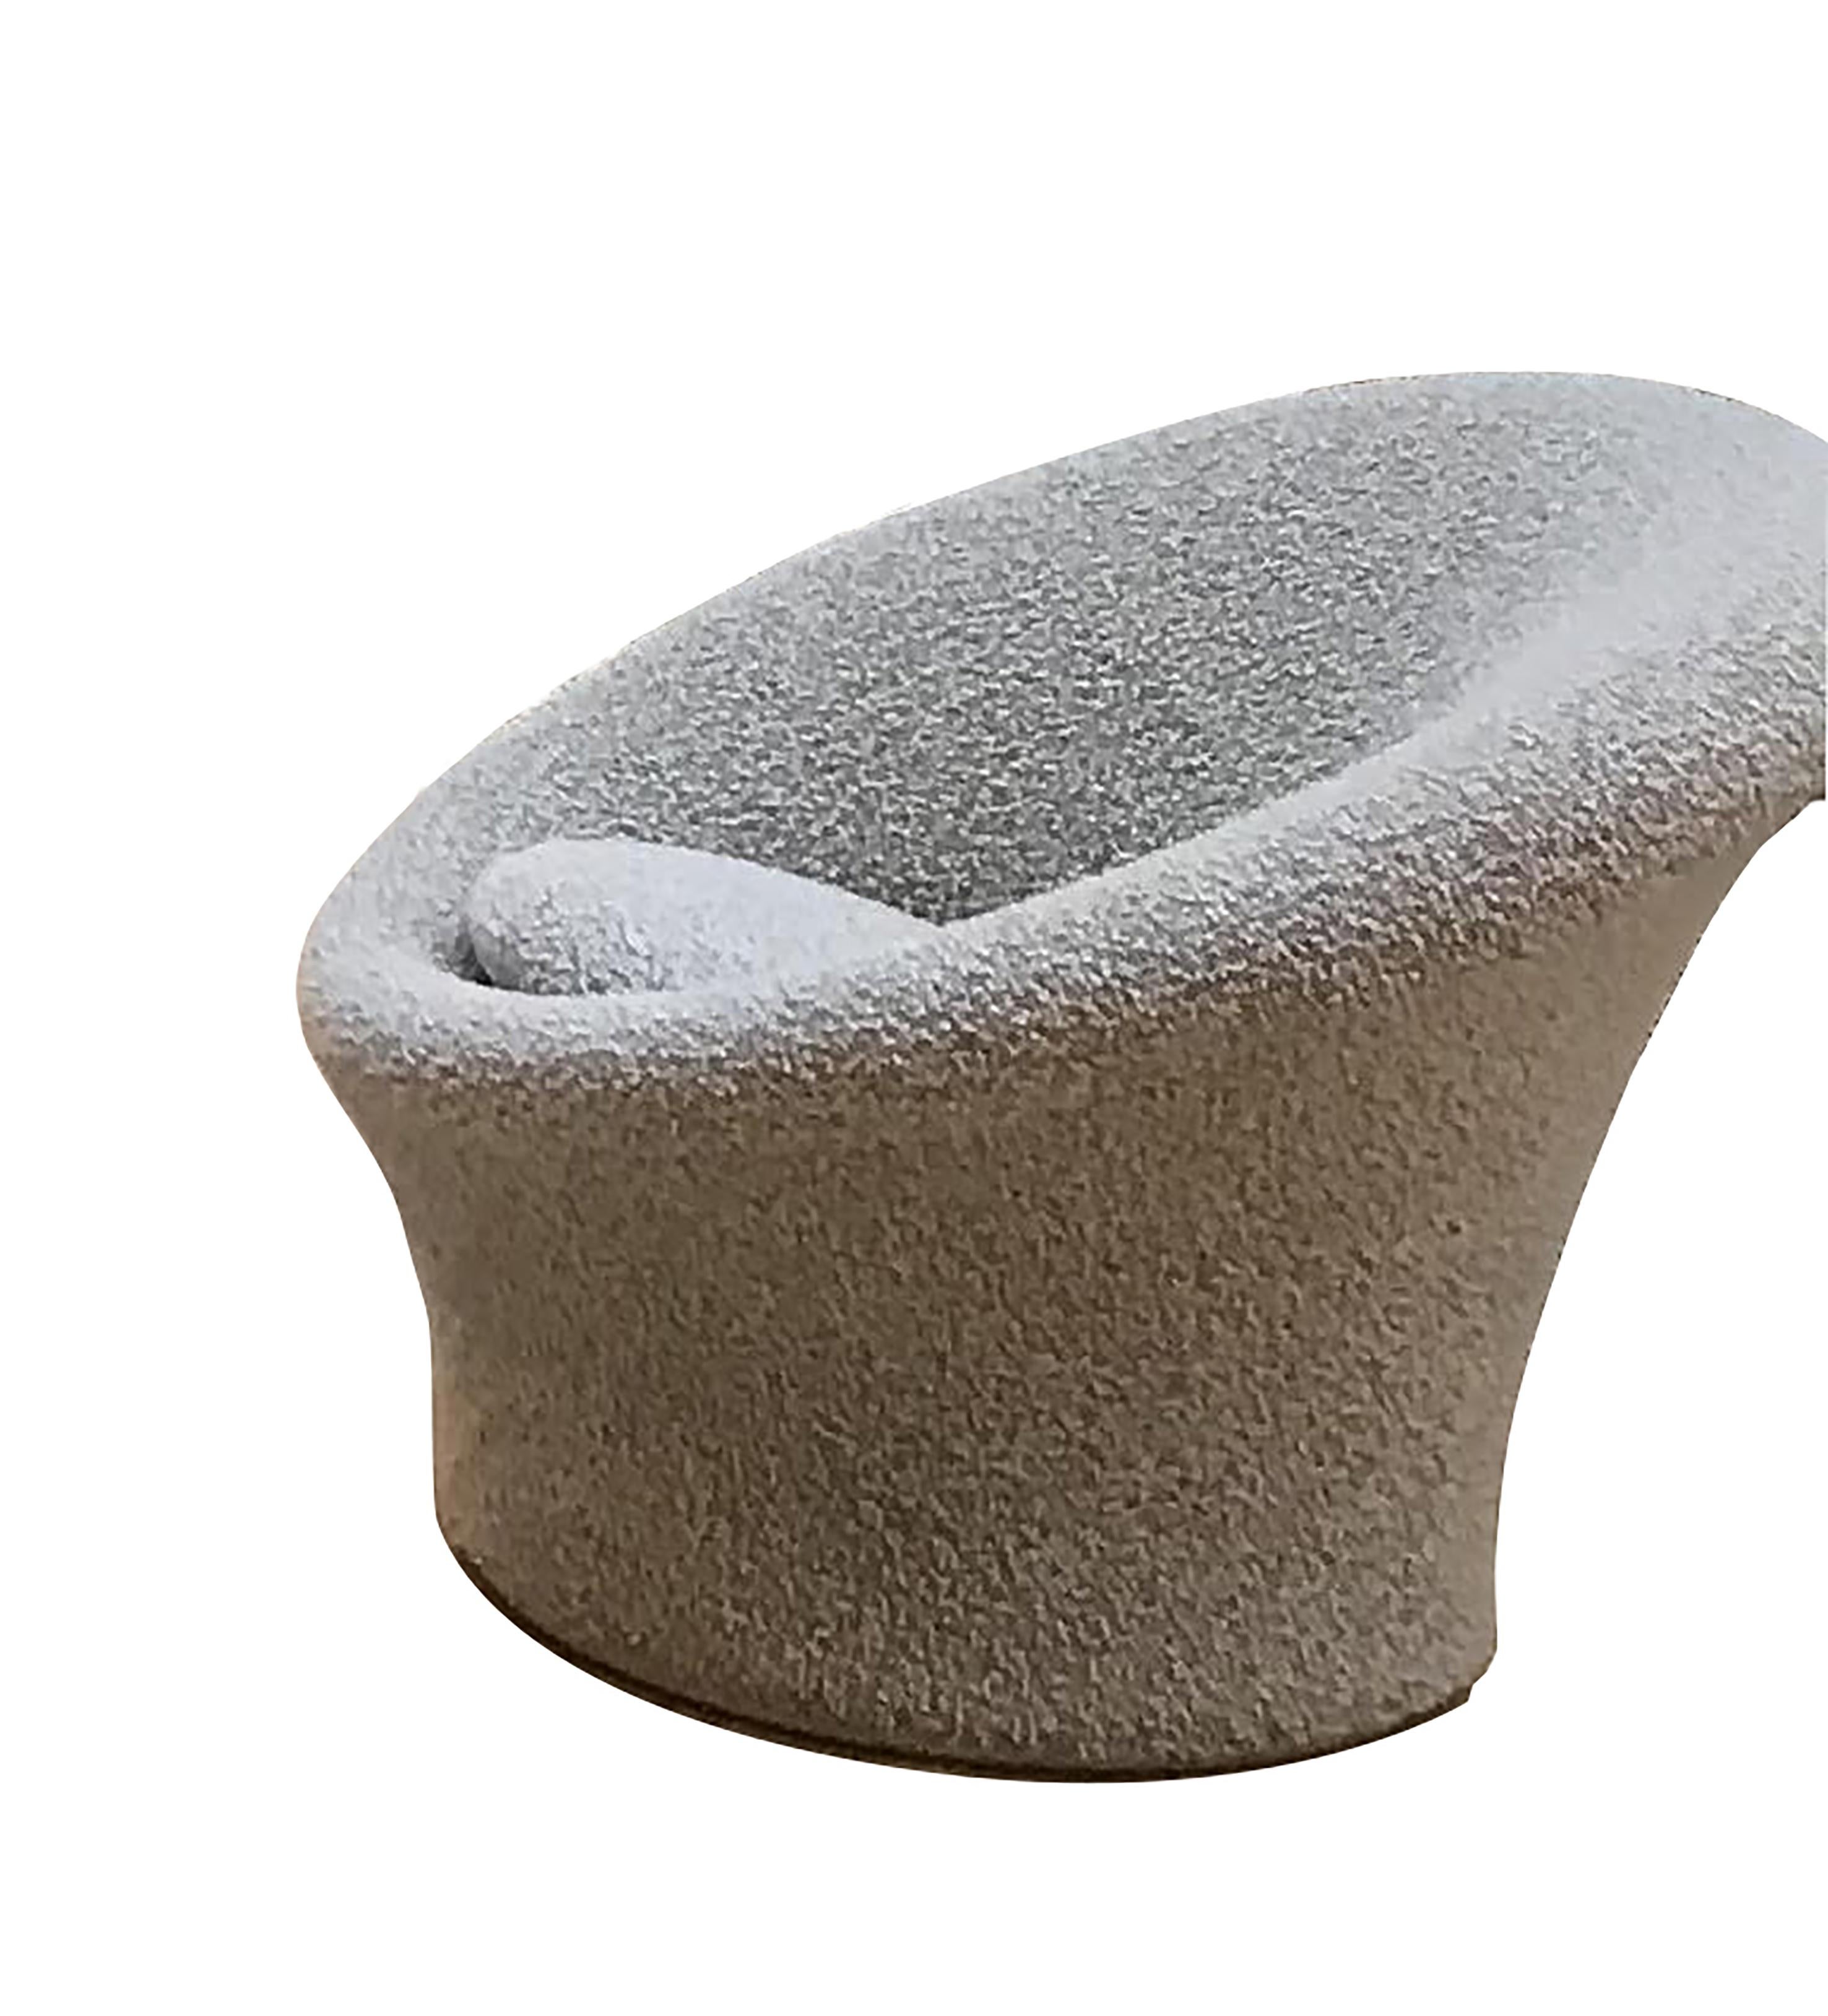 Fauteuil mushroom  F 588 de pierre Paulin, pour artifort 
Tissu iceberg en laine et coton  de chez Bisson Bruneel
